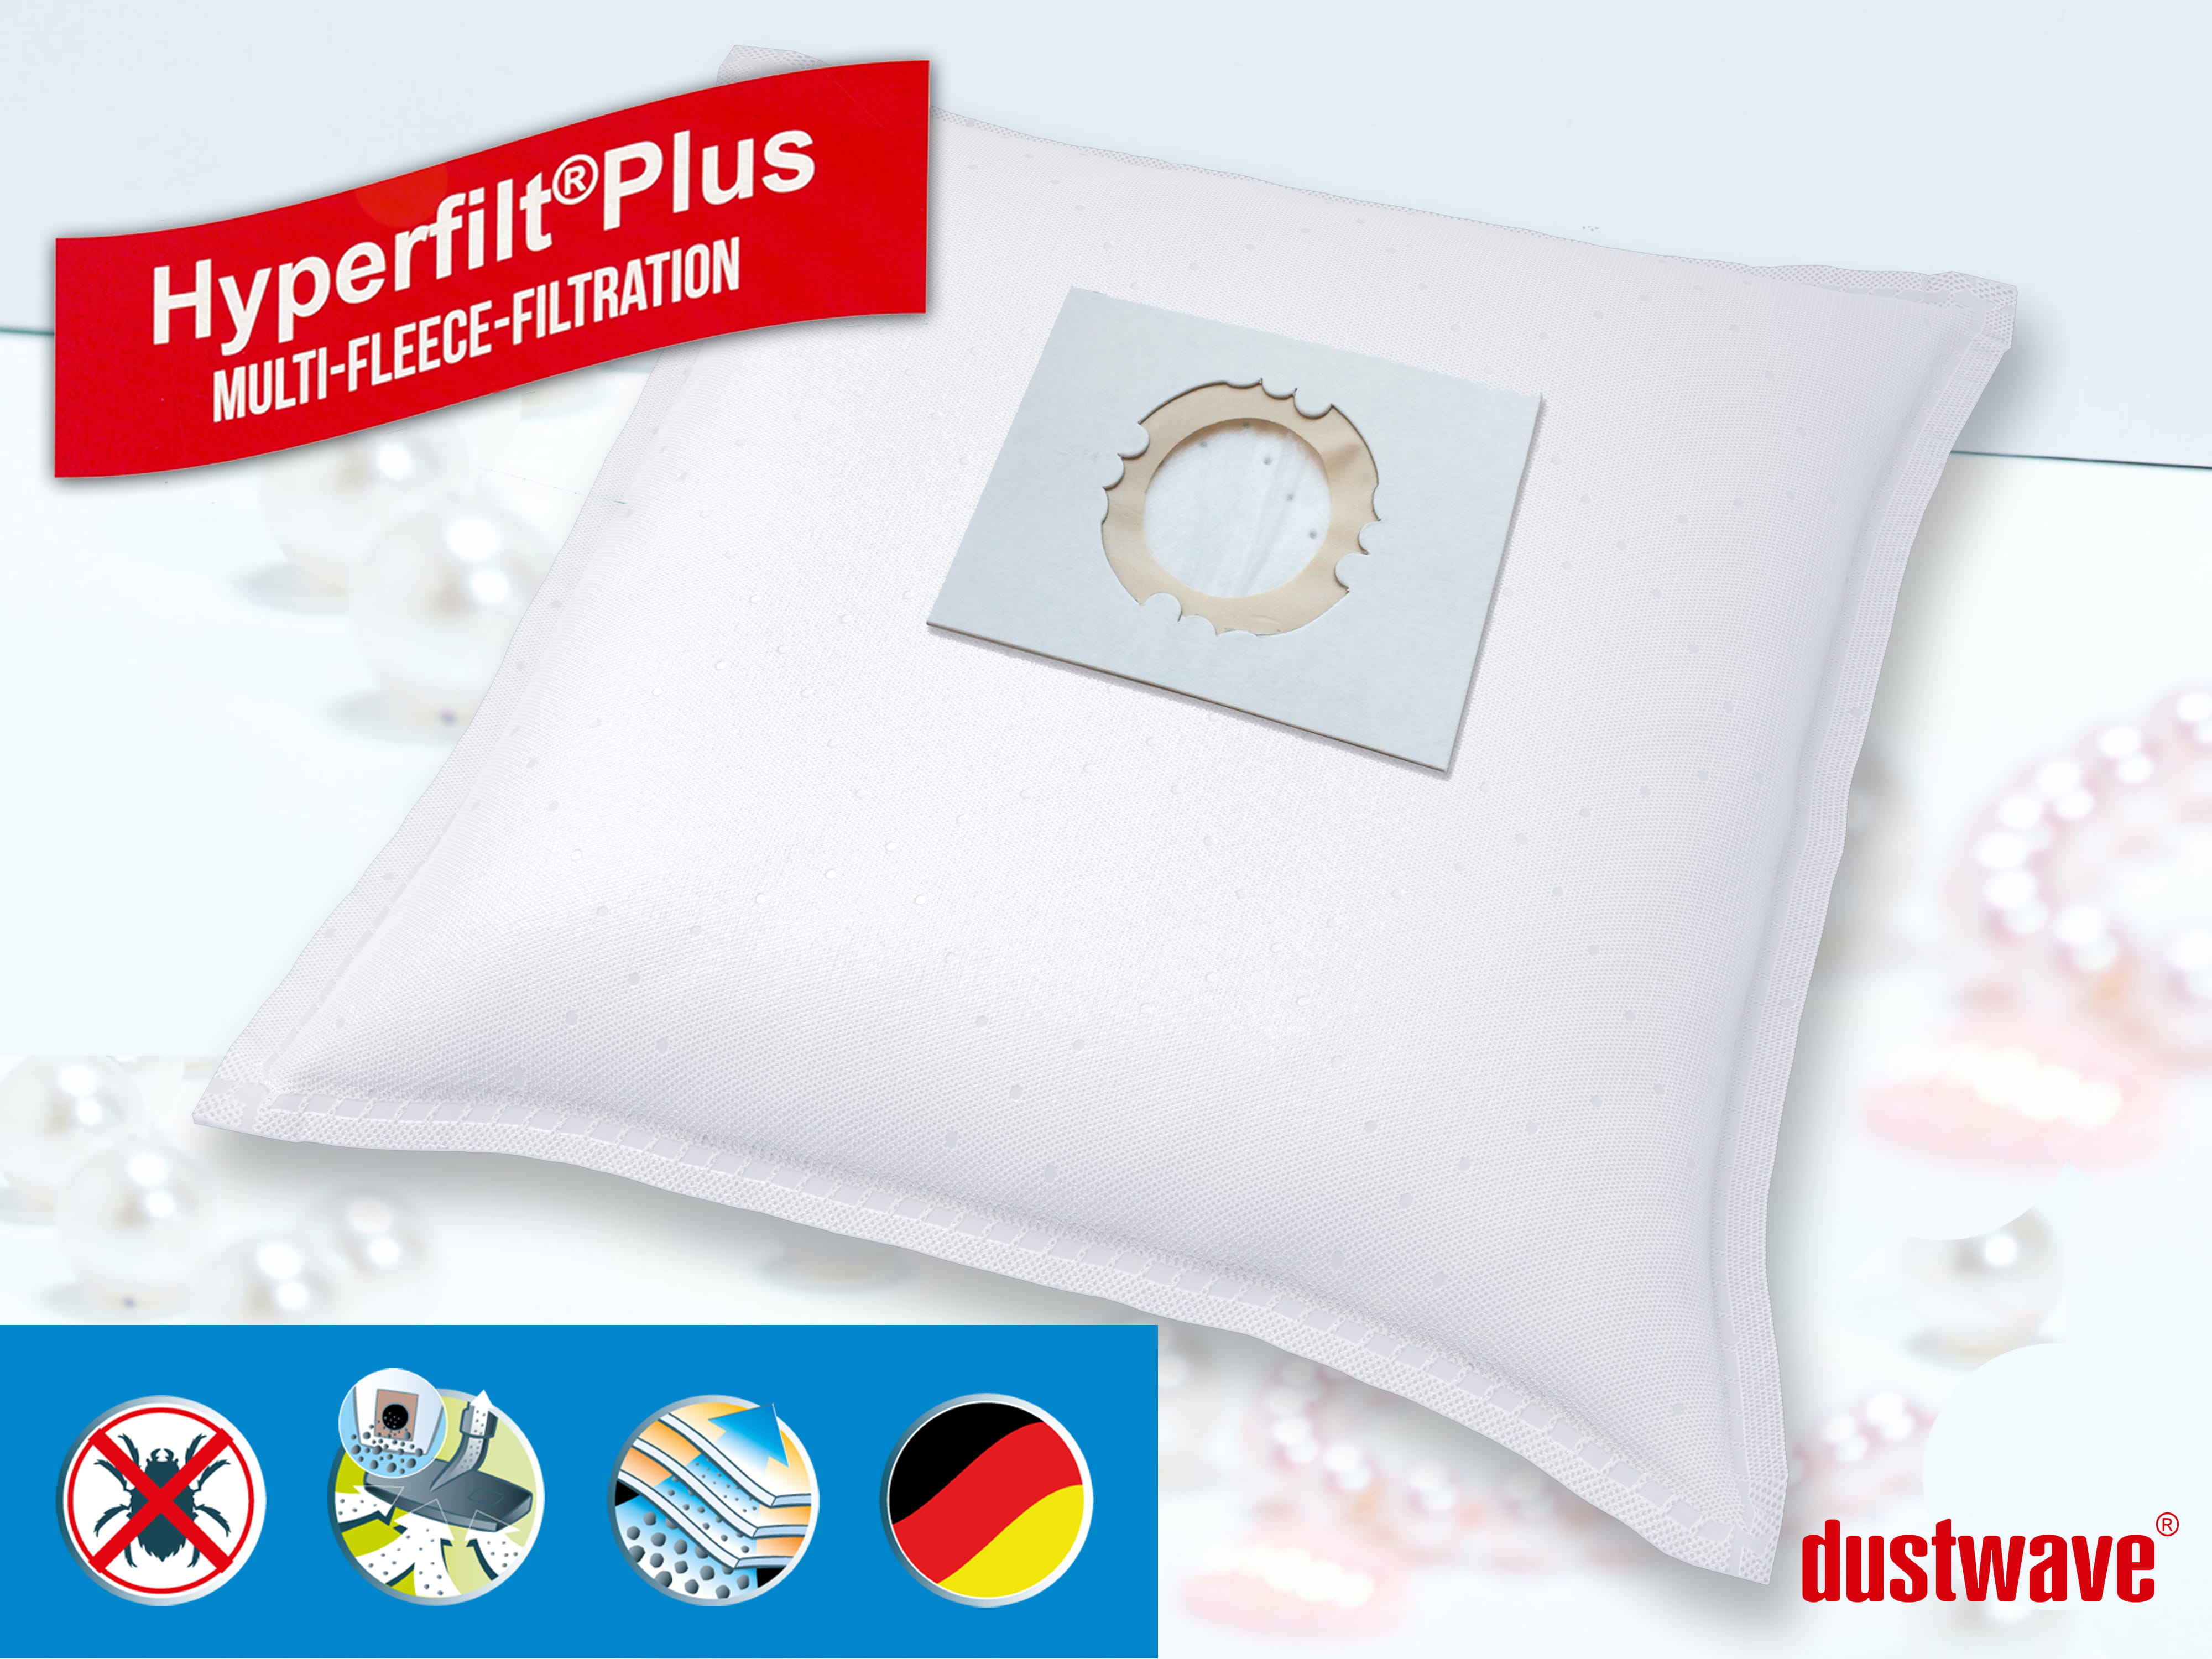 Dustwave® 20 Staubsaugerbeutel für Hoover BD S6254001 - hocheffizient, mehrlagiges Mikrovlies mit Hygieneverschluss - Made in Germany